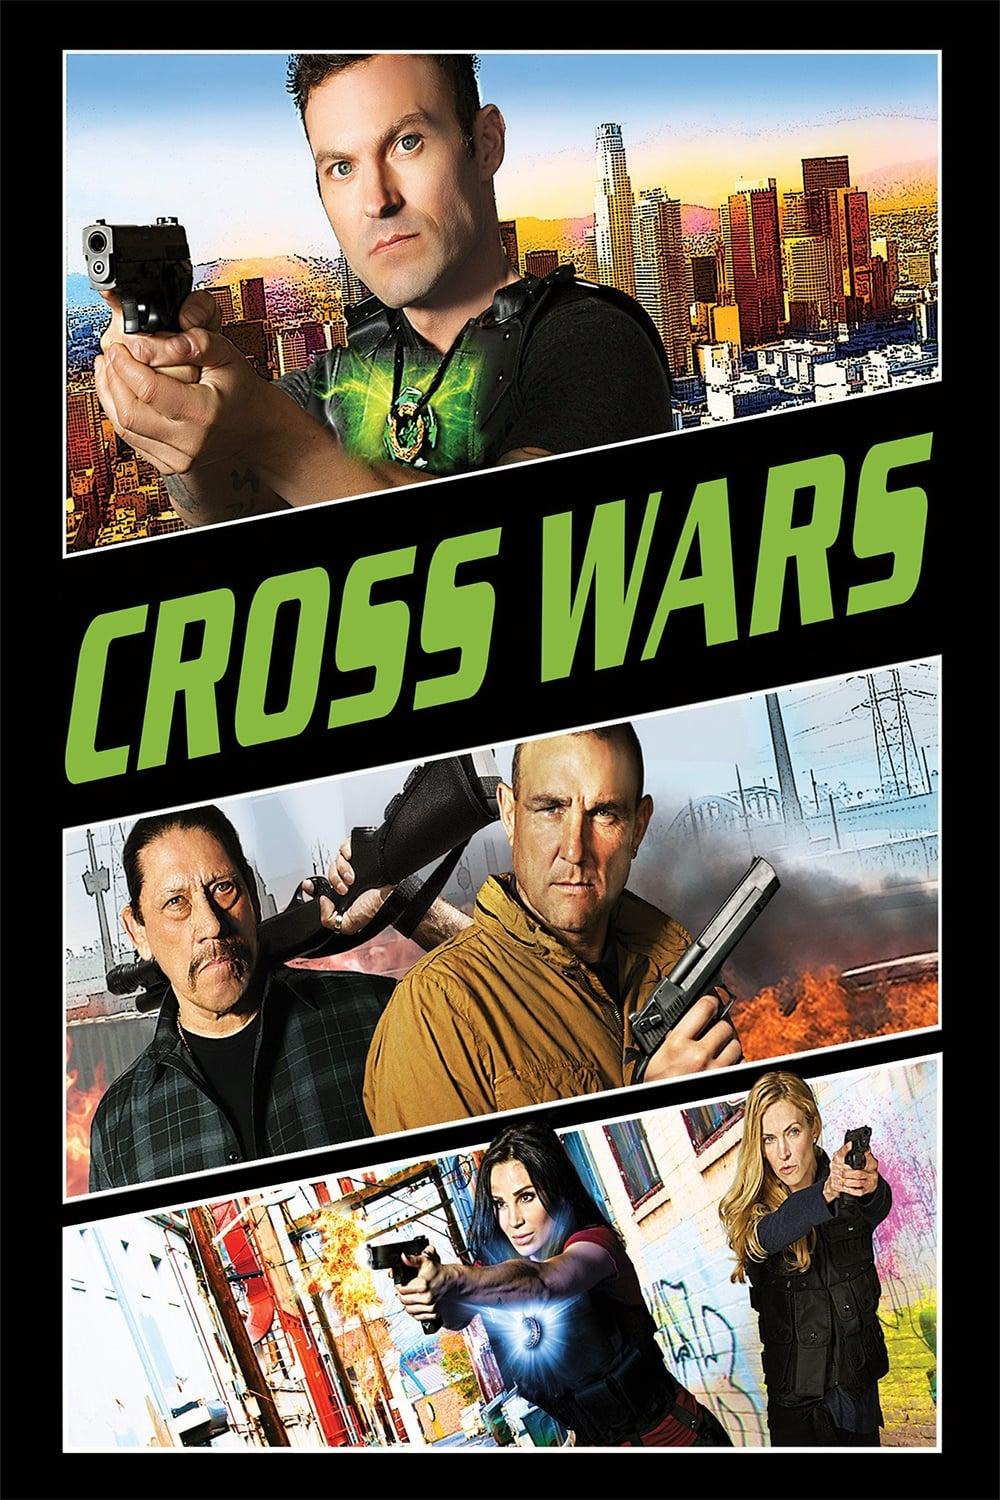 Cross Wars poster